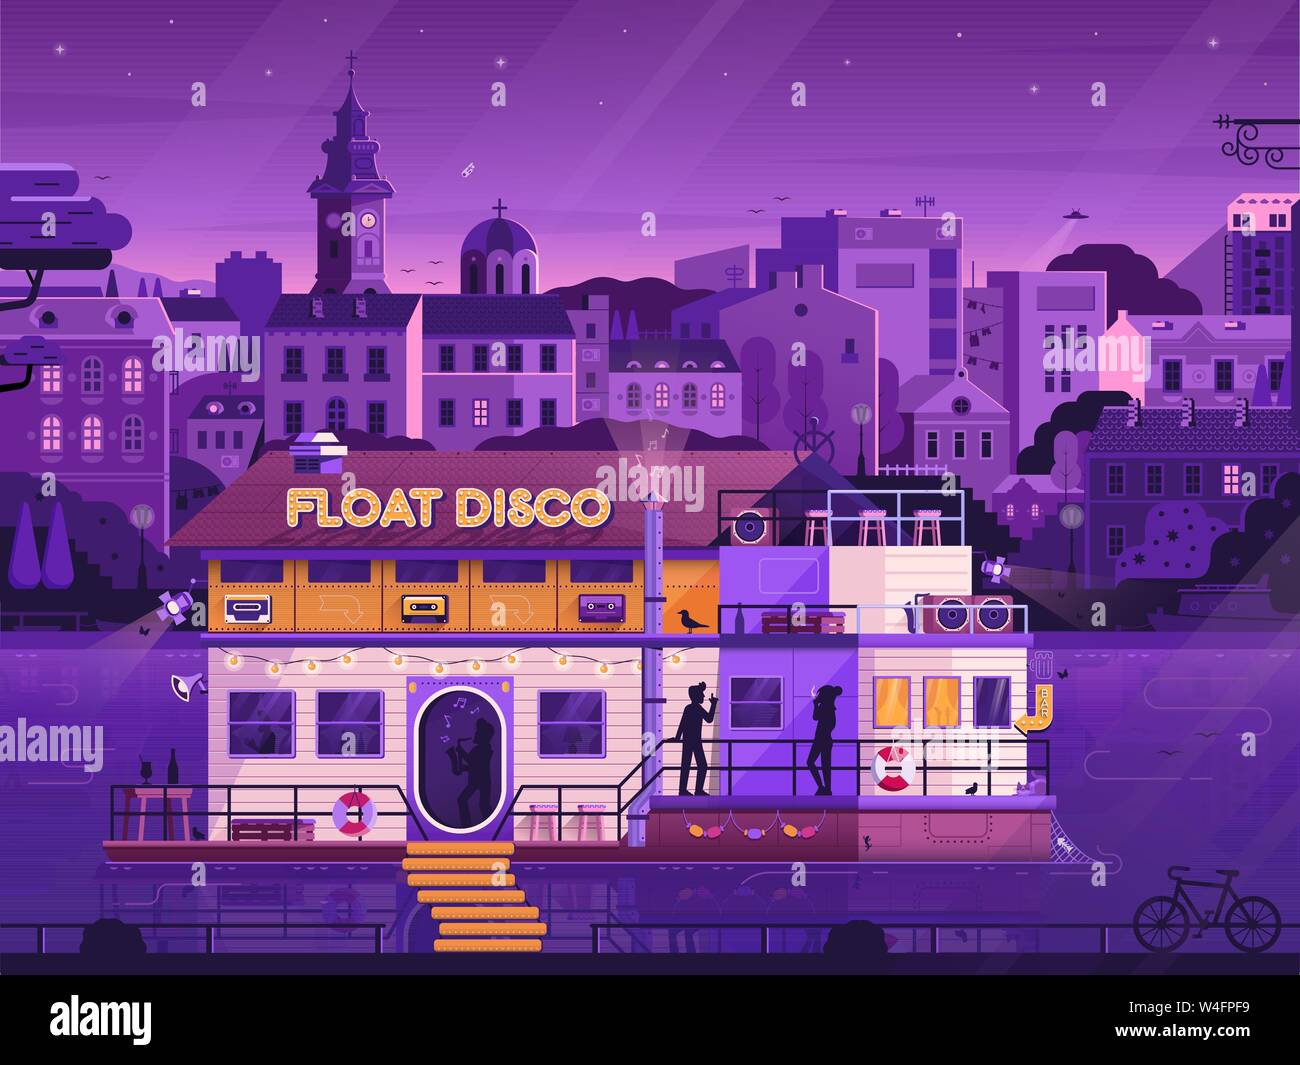 Discothèque discothèque flottante sur le bateau à Belgrade Illustration de Vecteur